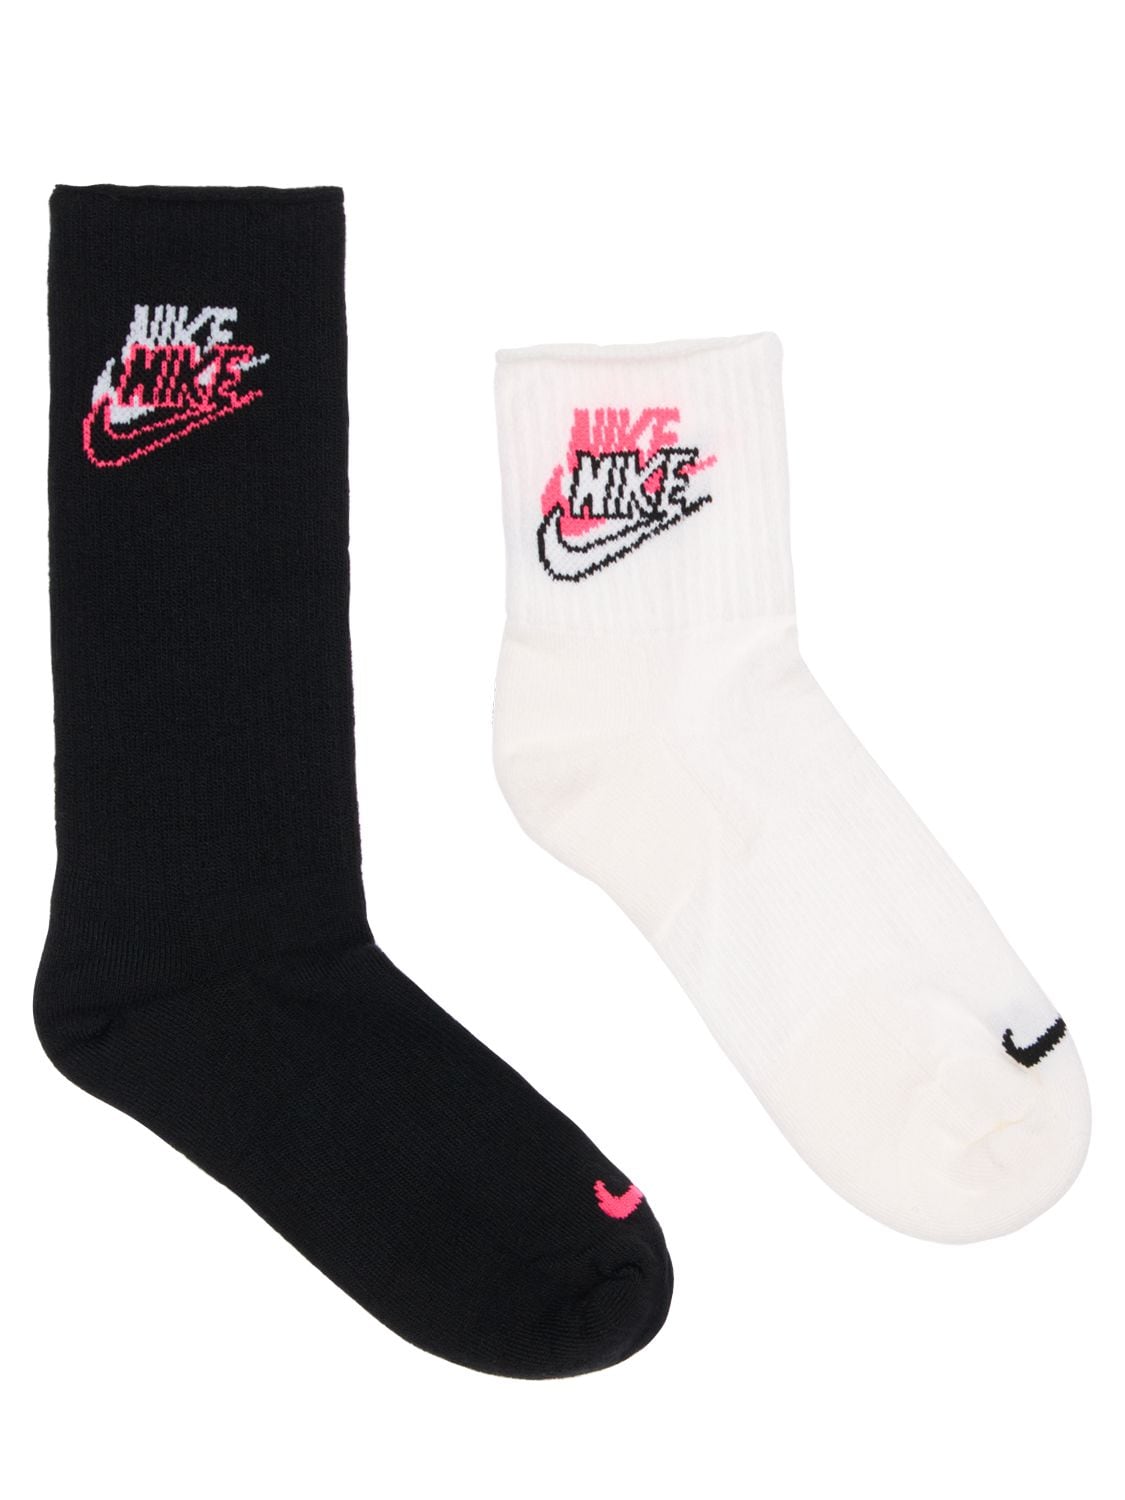 Nike Heritage 2-pack Socks In Black And White In Black,white